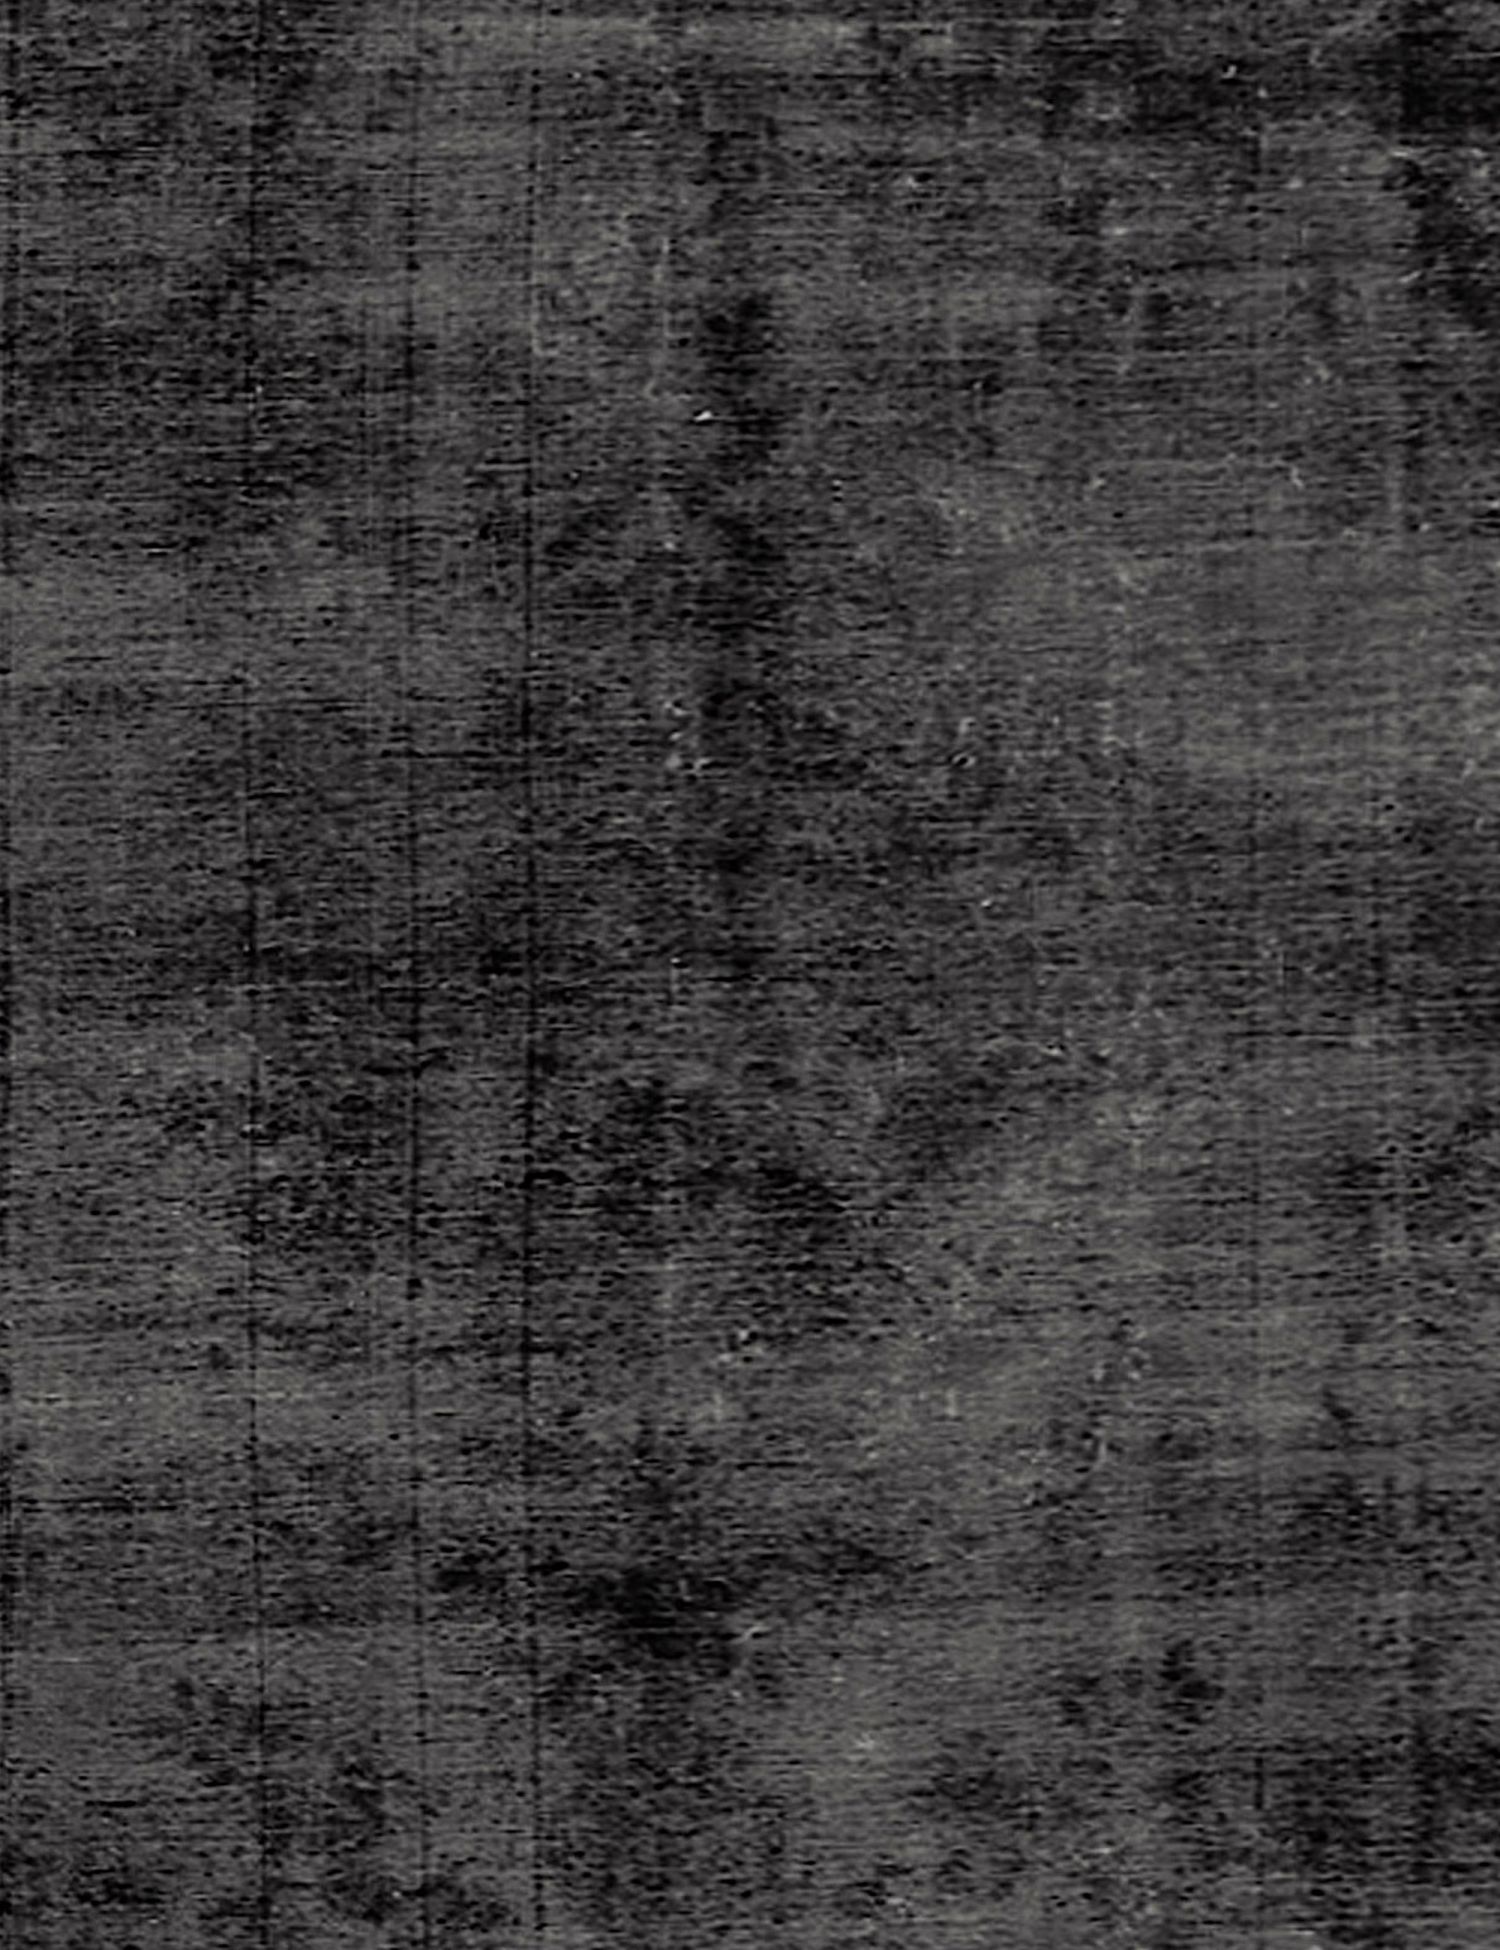 Persian Vintage Carpet  black <br/>275 x 180 cm